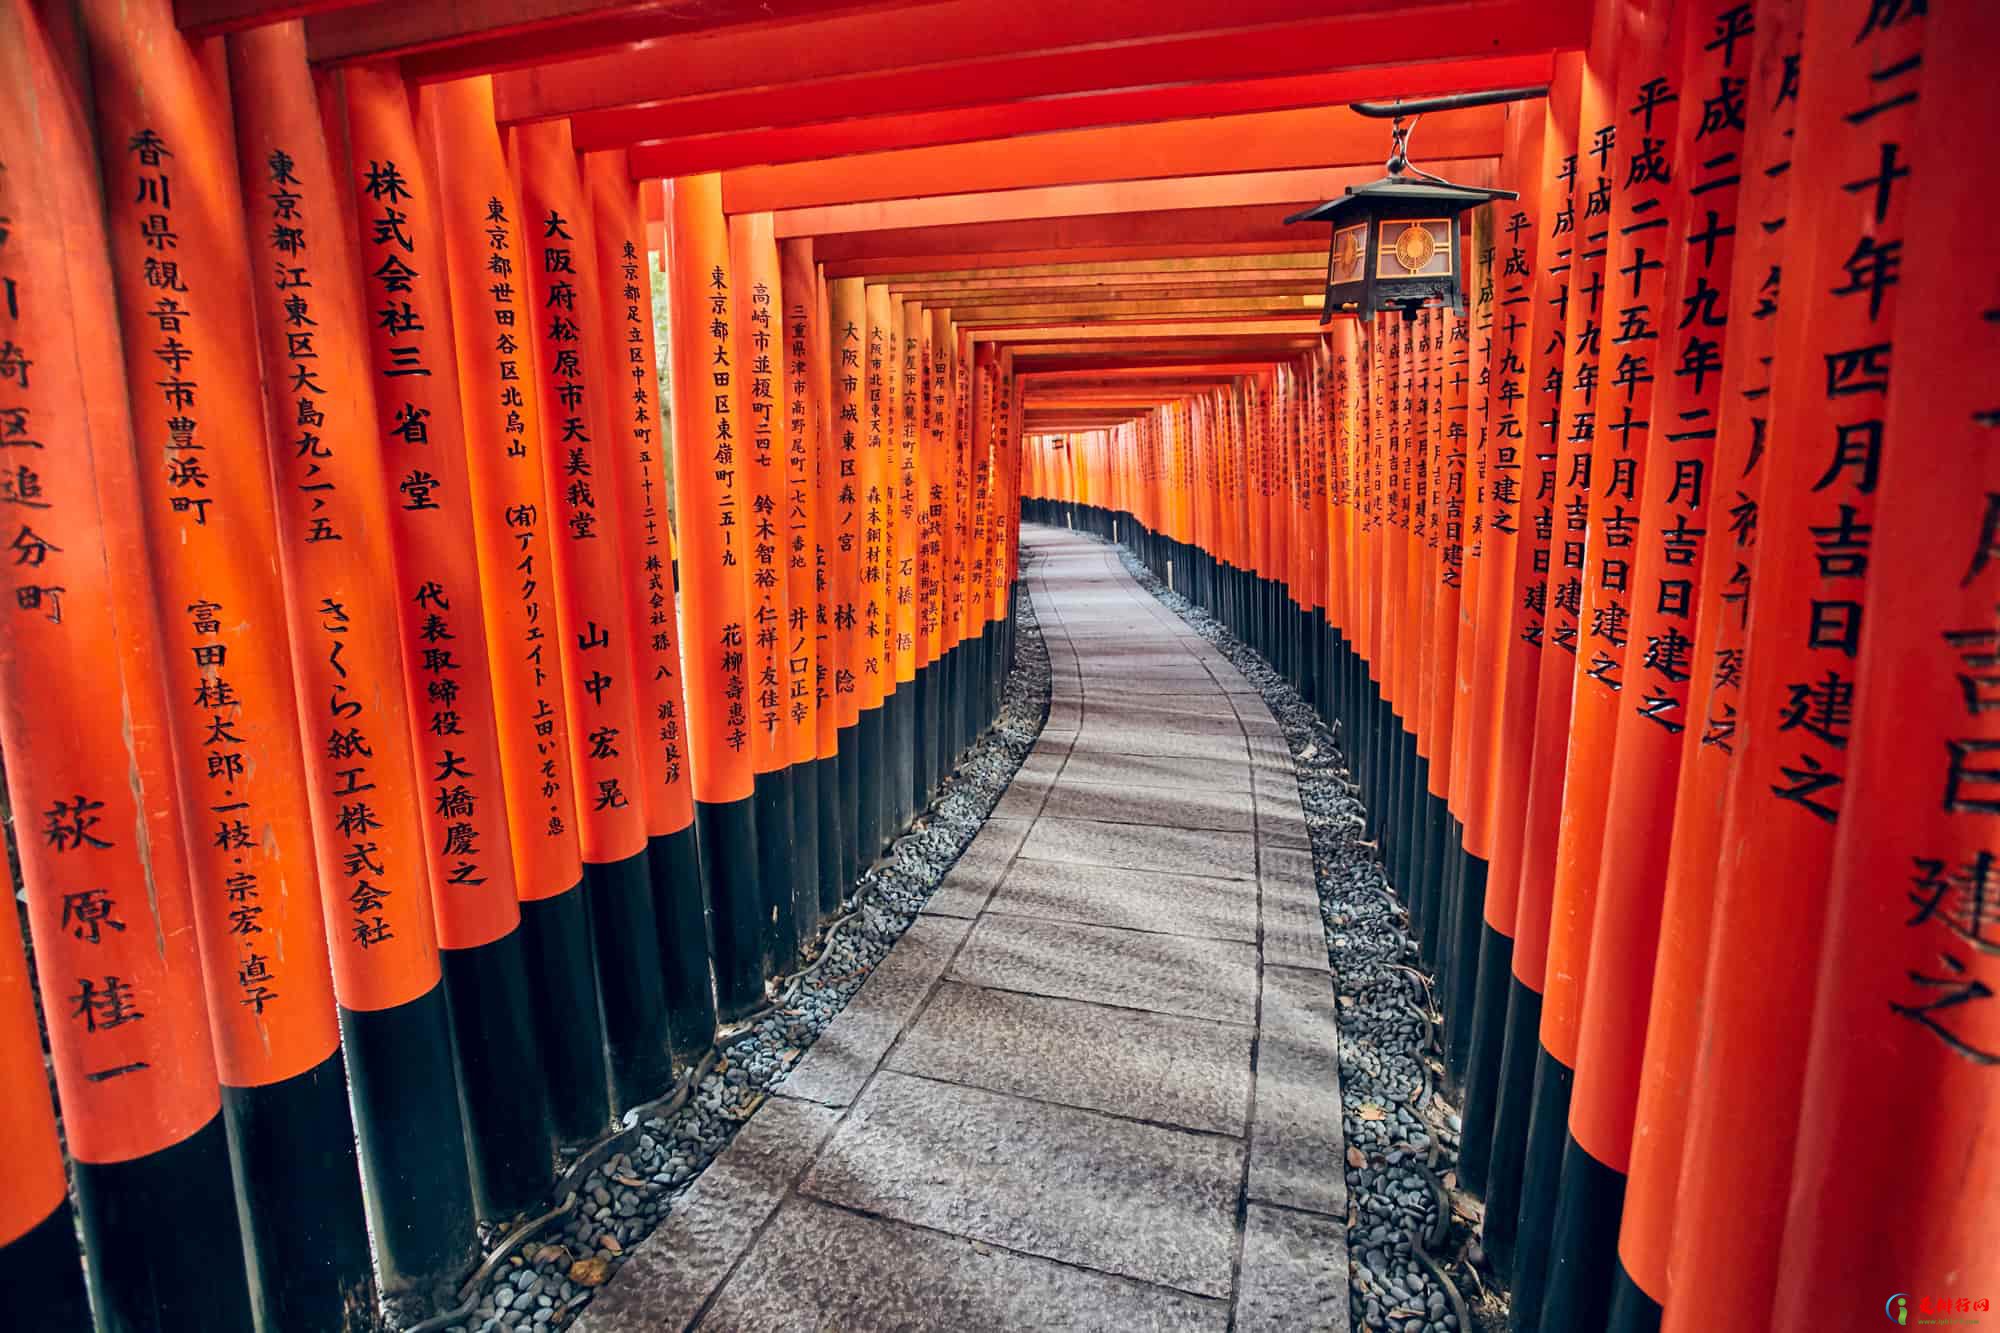 日本旅游最有人气的10大好看景点 日本必去十大景点排名